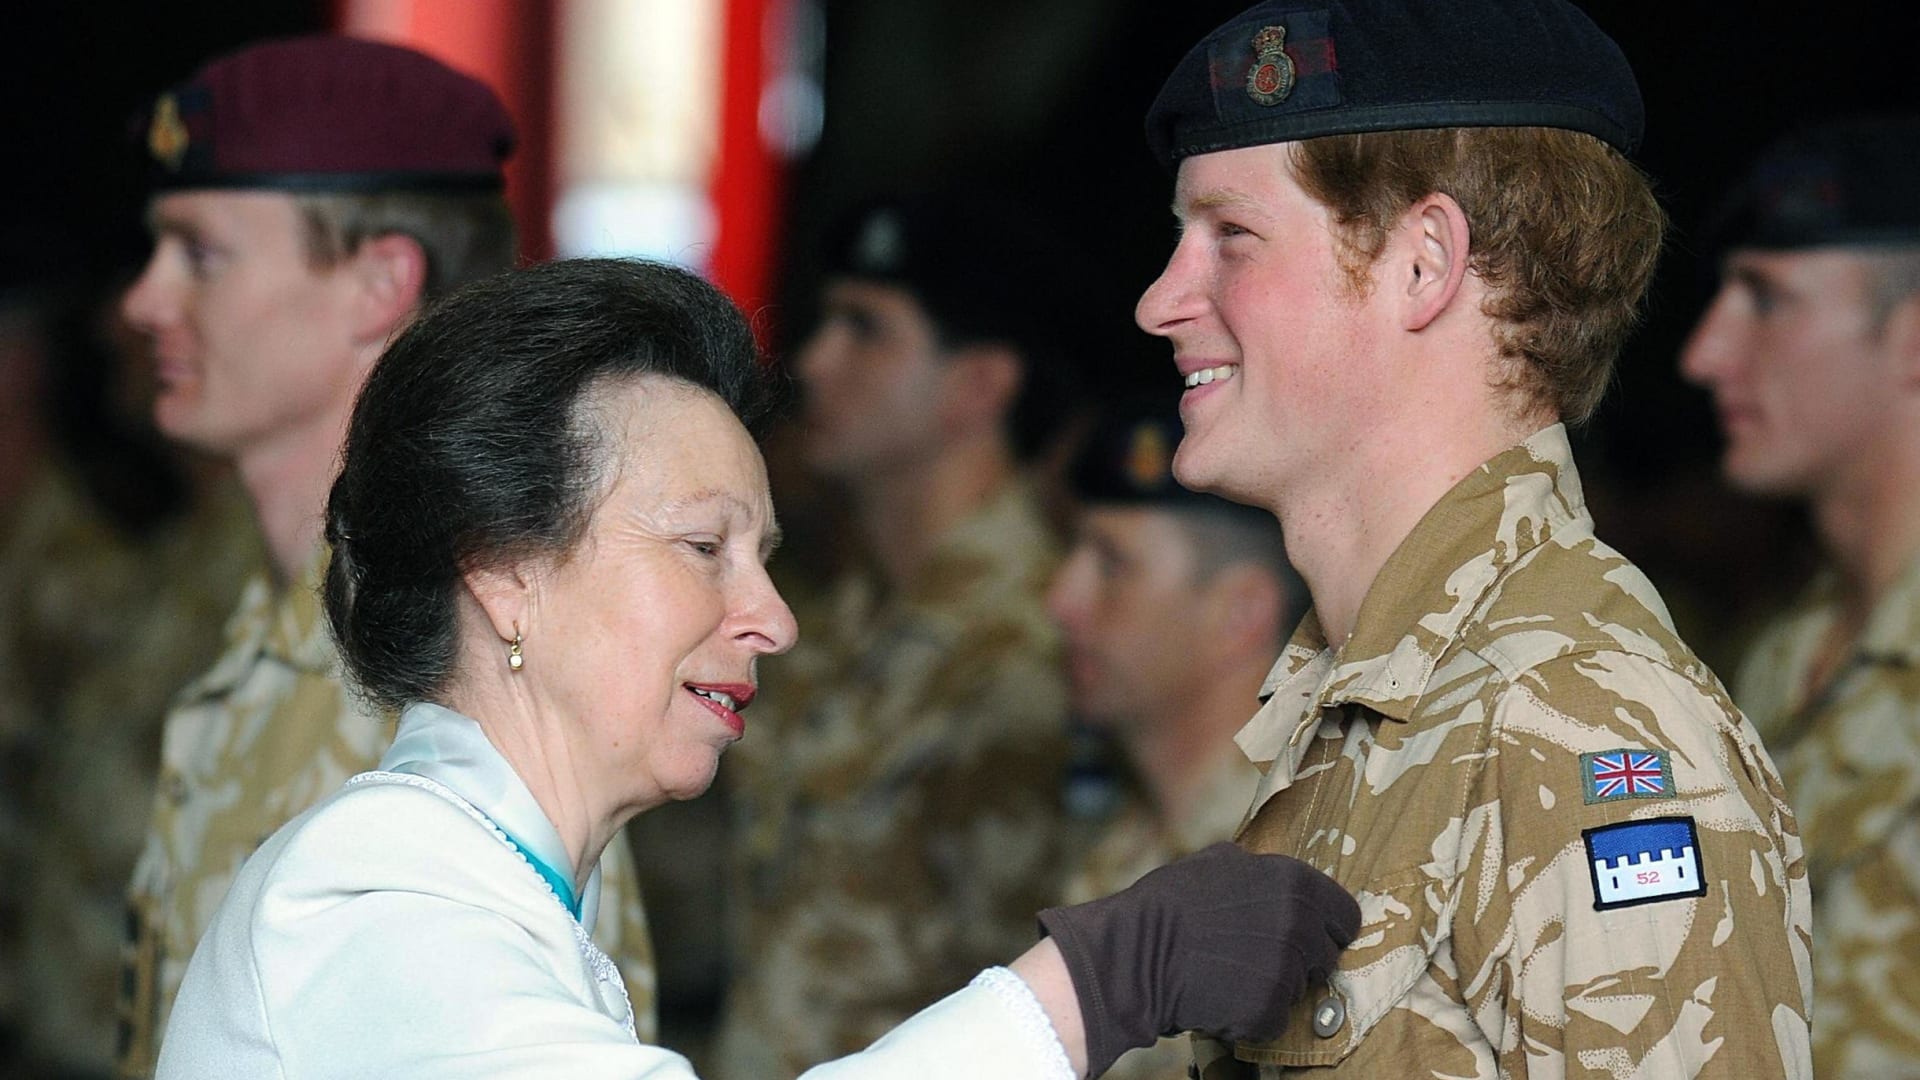 الأمير هاري: قتلت 25 شخصا أثناء خدمتي في أفغانستان